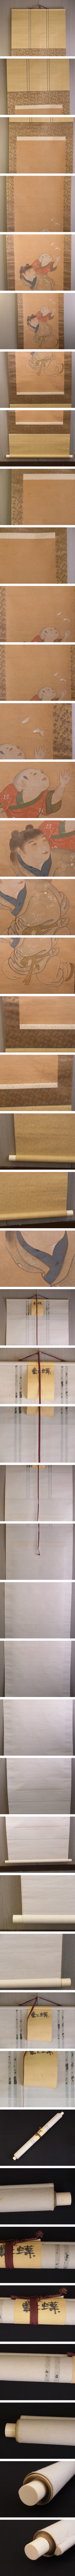 【定番お買い得】t746 蔵出 掛軸 童子と蝶の図 作者不詳 肉筆 絹本 骨董 古書画 日本画 人物 人物、菩薩